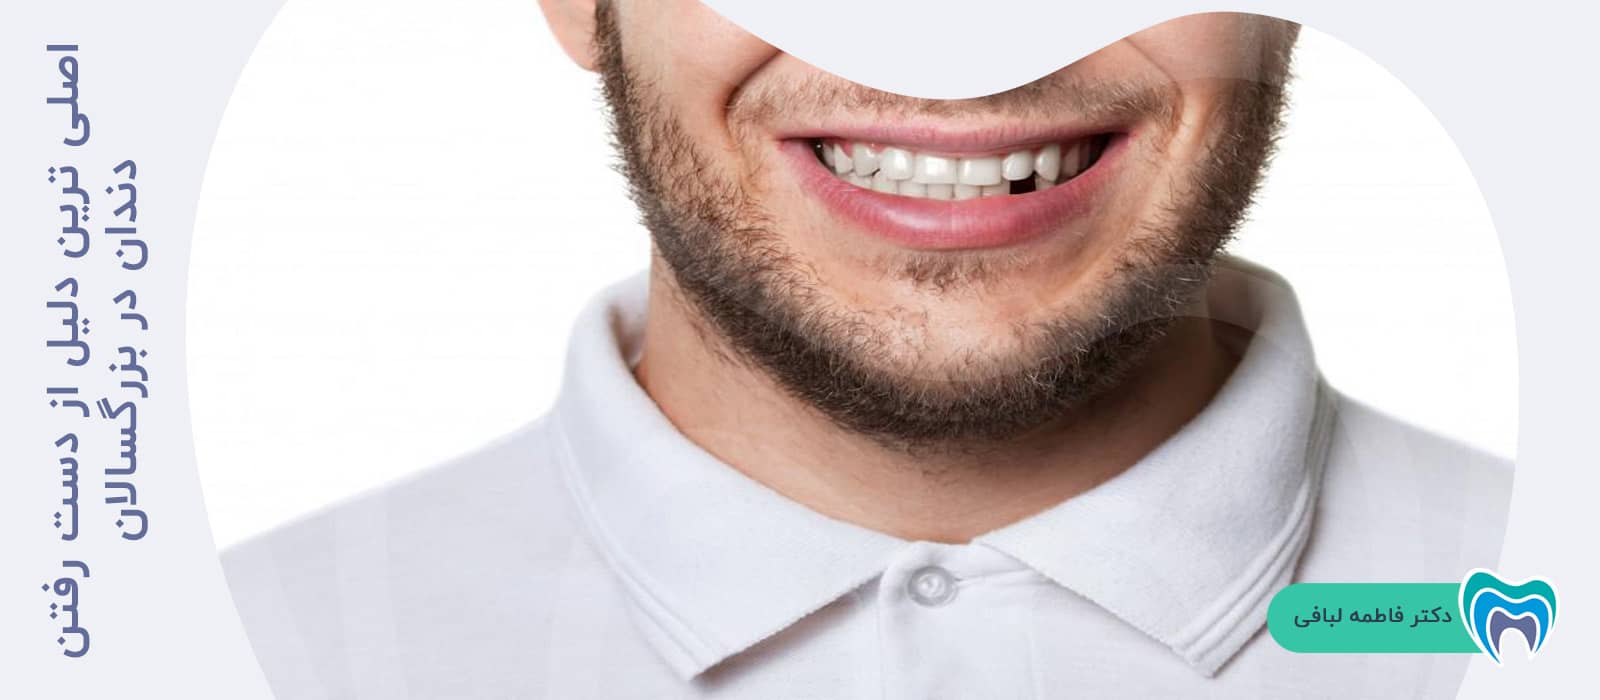 اصلی ترین دلیل از دست رفتن دندان در بزرگسالان